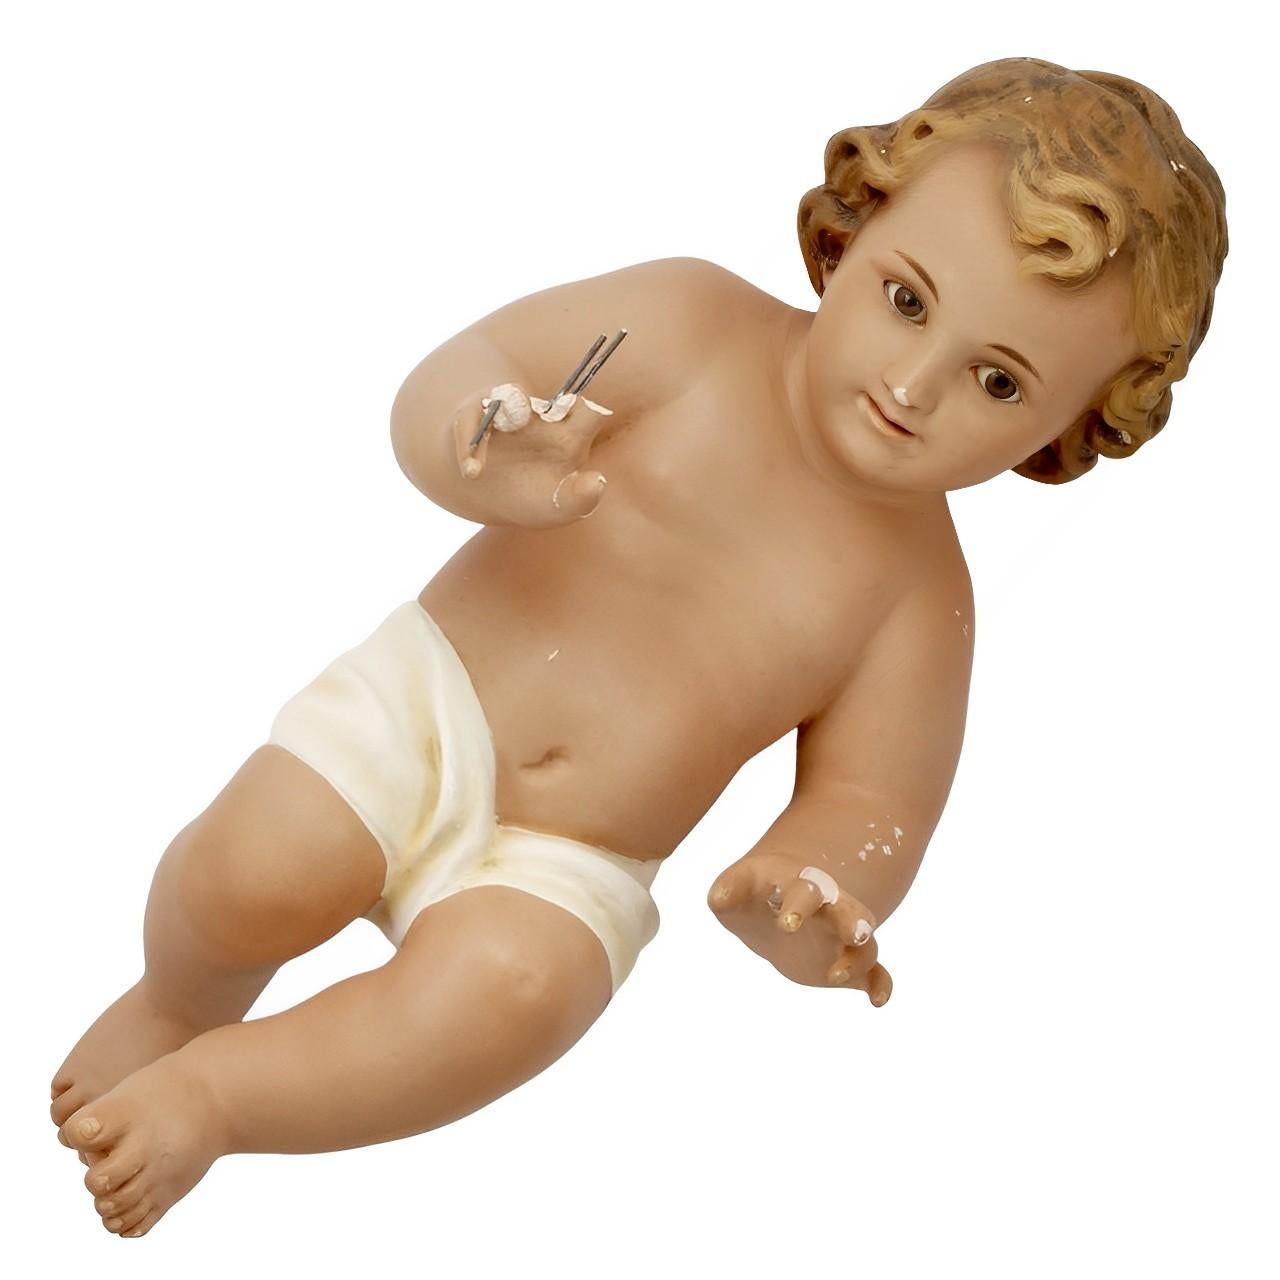 Wooden Cradle for Babies-Newborn Baby Cotton Baby Cradle/Baby